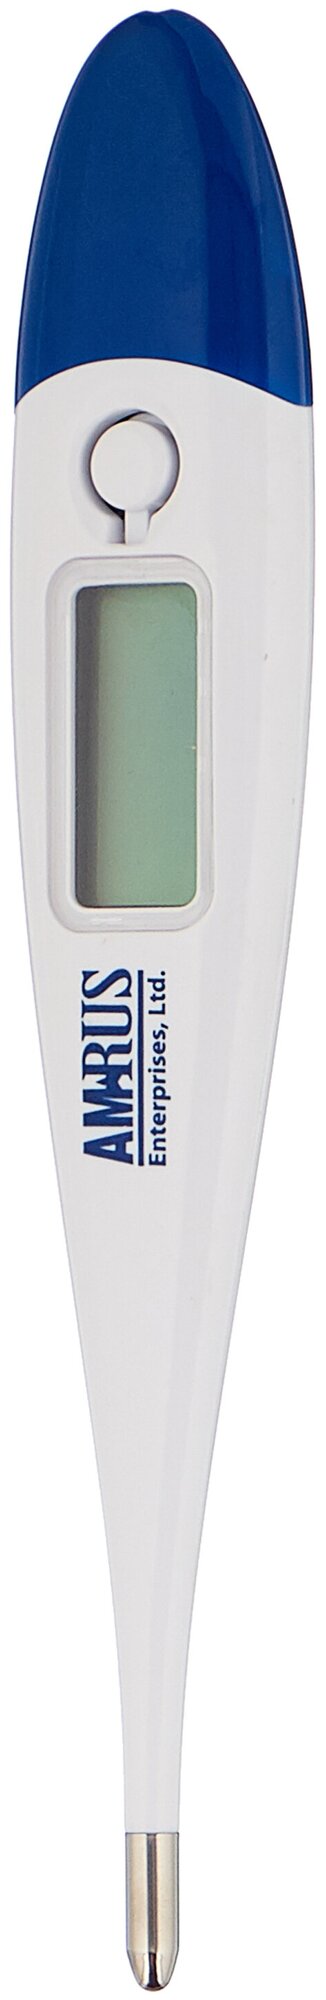 Термометр электронный Amrus AMDT-10 ударопрочный, влагостойкий